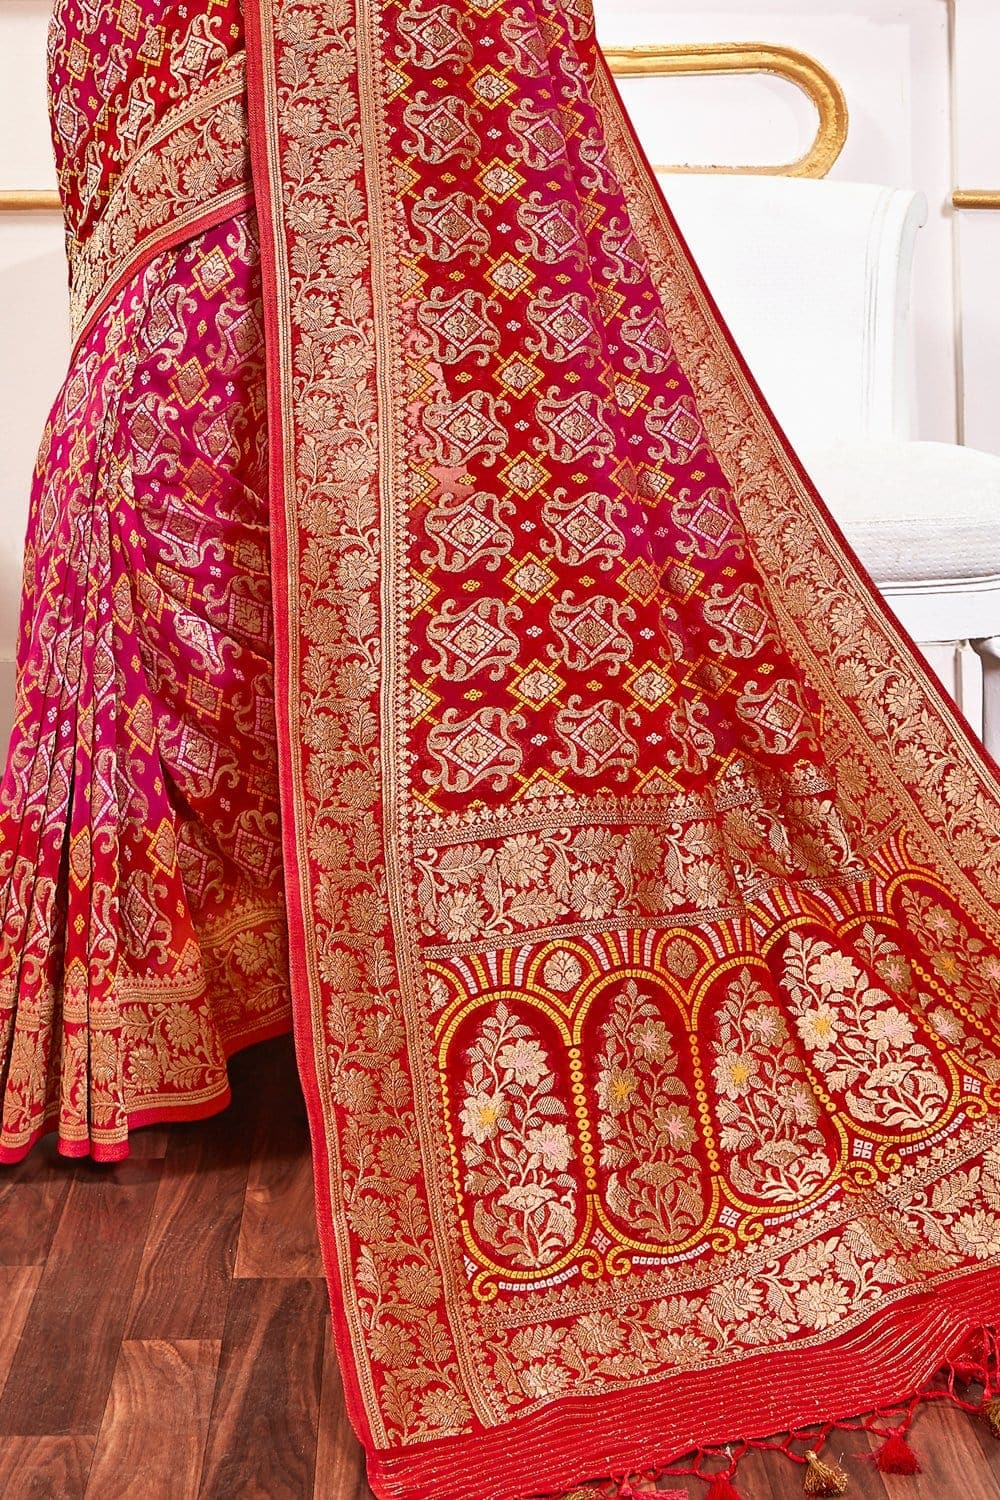 Scarlet Red And Rouge Pink Printed Banarasi Saree